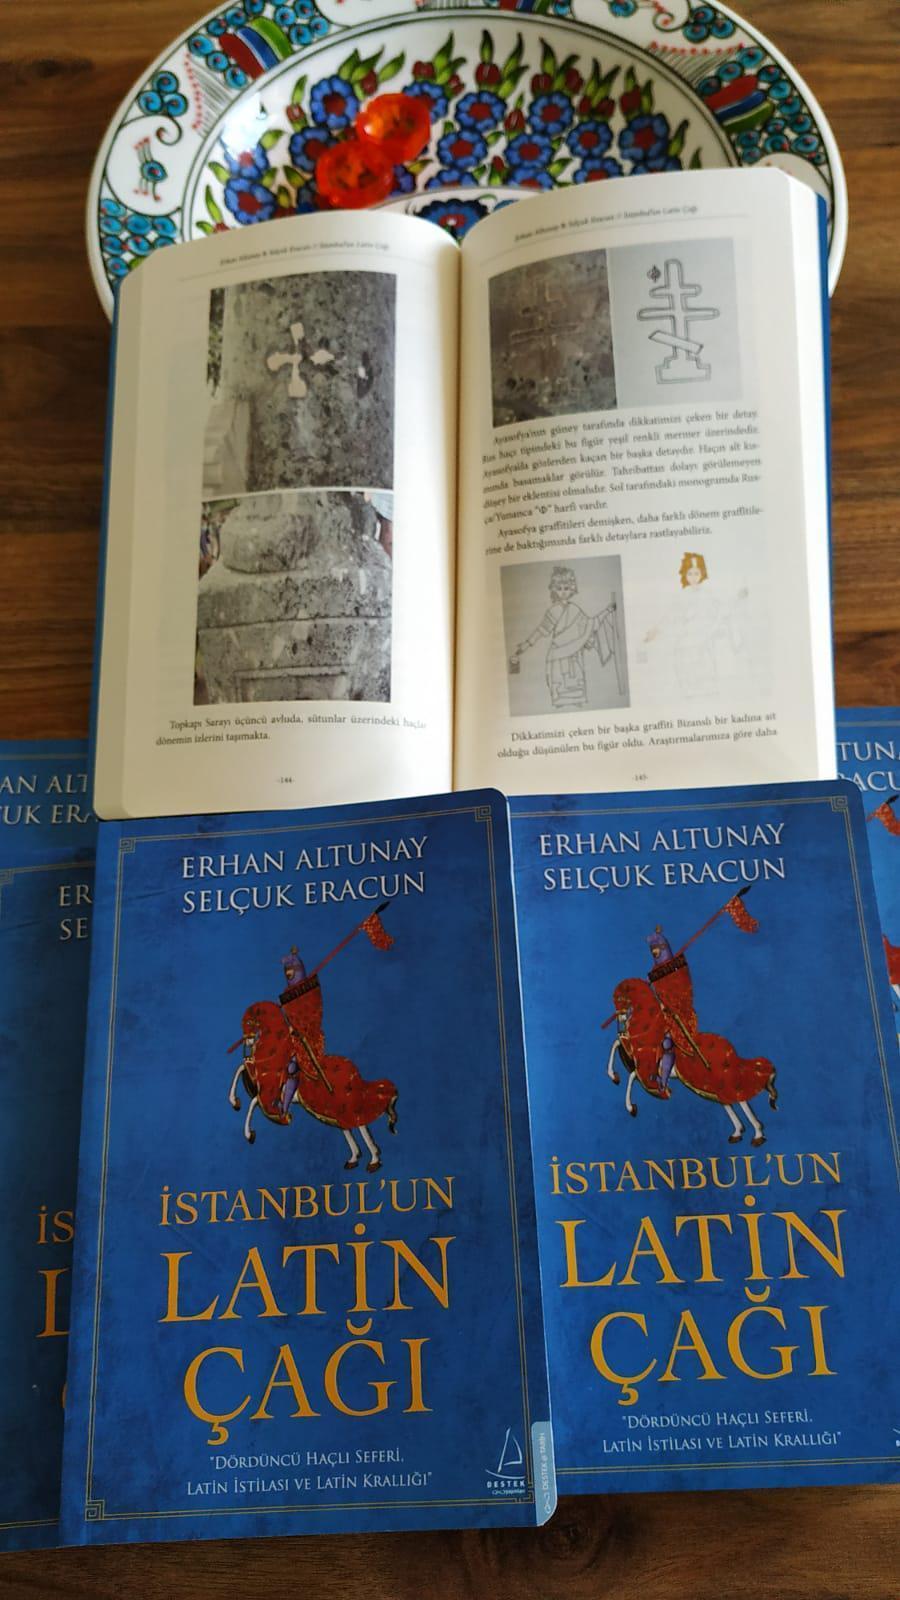 İstanbulun Latin Çağı: Dördüncü Haçlı Seferi, Latin istilası ve Latin Krallığı